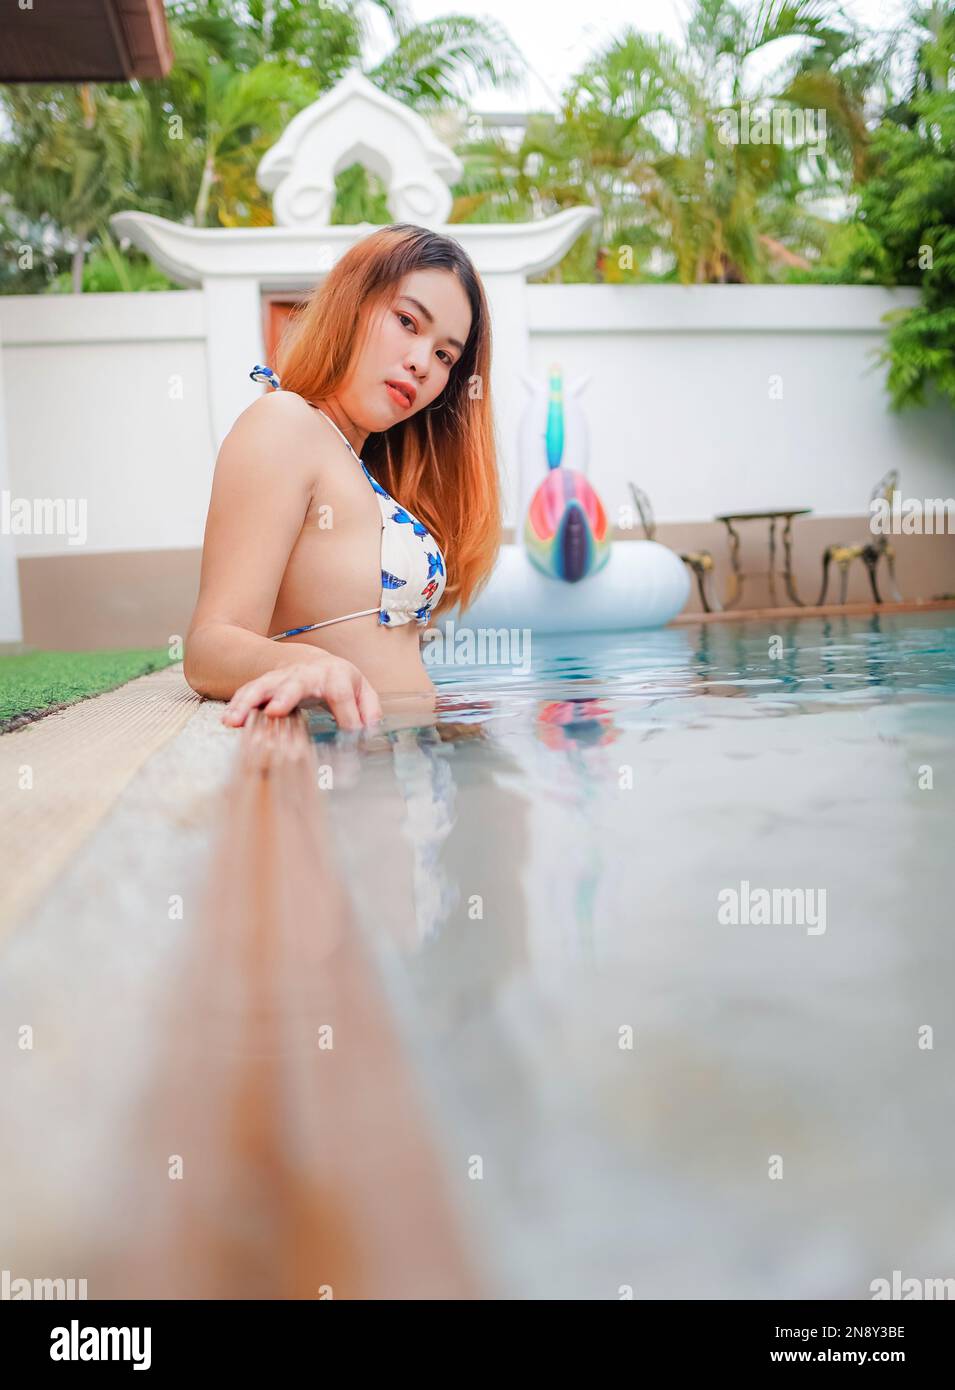 Asiatique jeune femme sexy portant un bikini blanc jouant dans la piscine à Pool Villa Banque D'Images